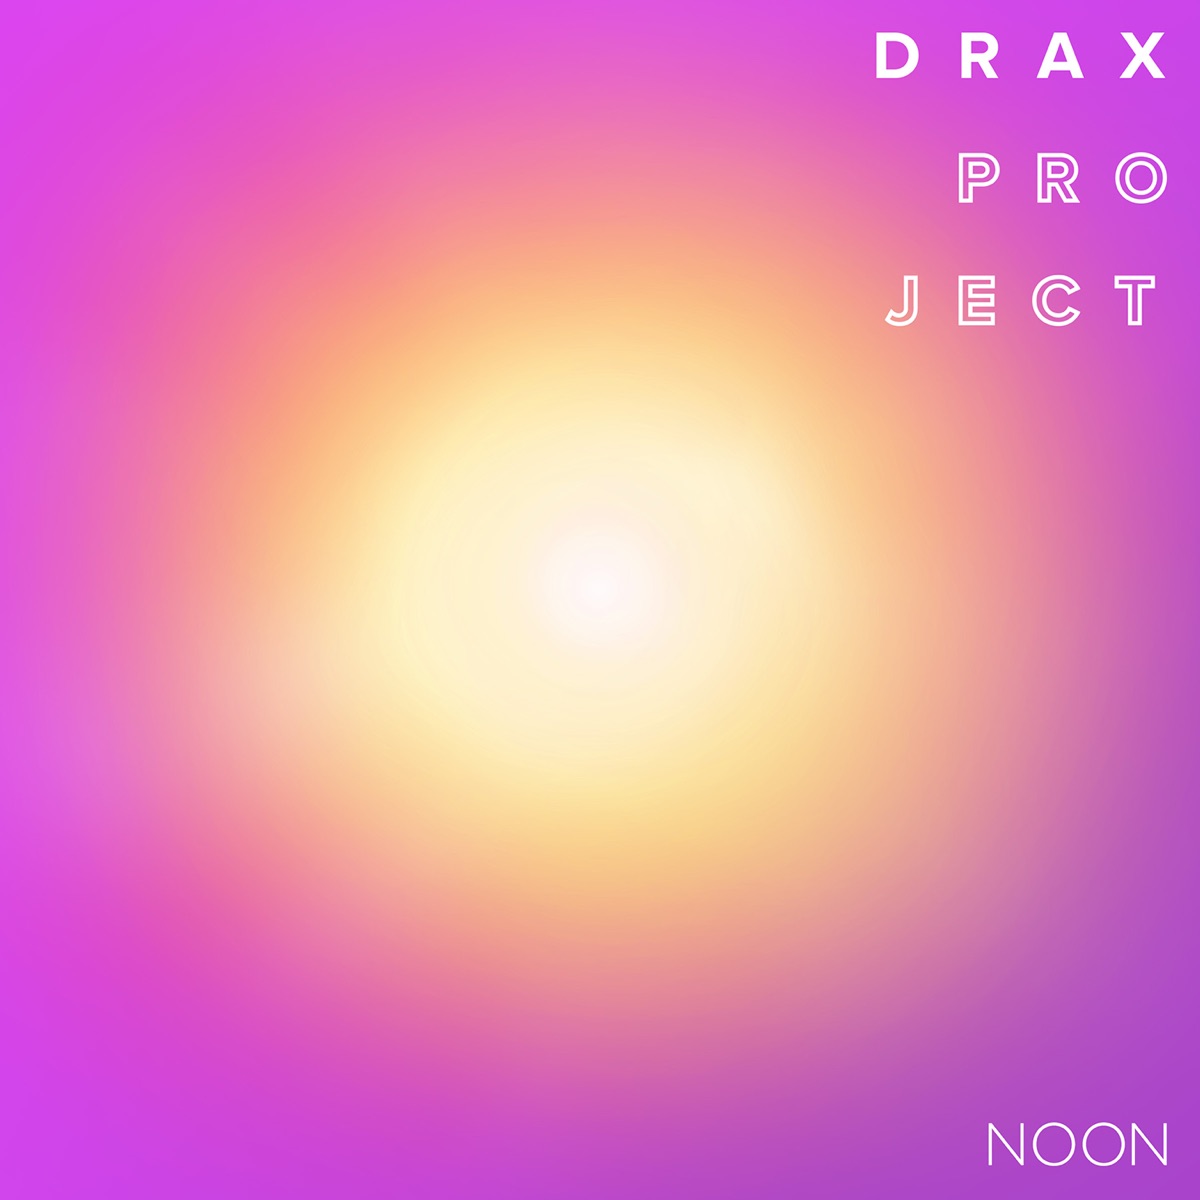 Woke up Late (feat. Hailee Steinfeld) - Single by Drax Project on Apple  Music